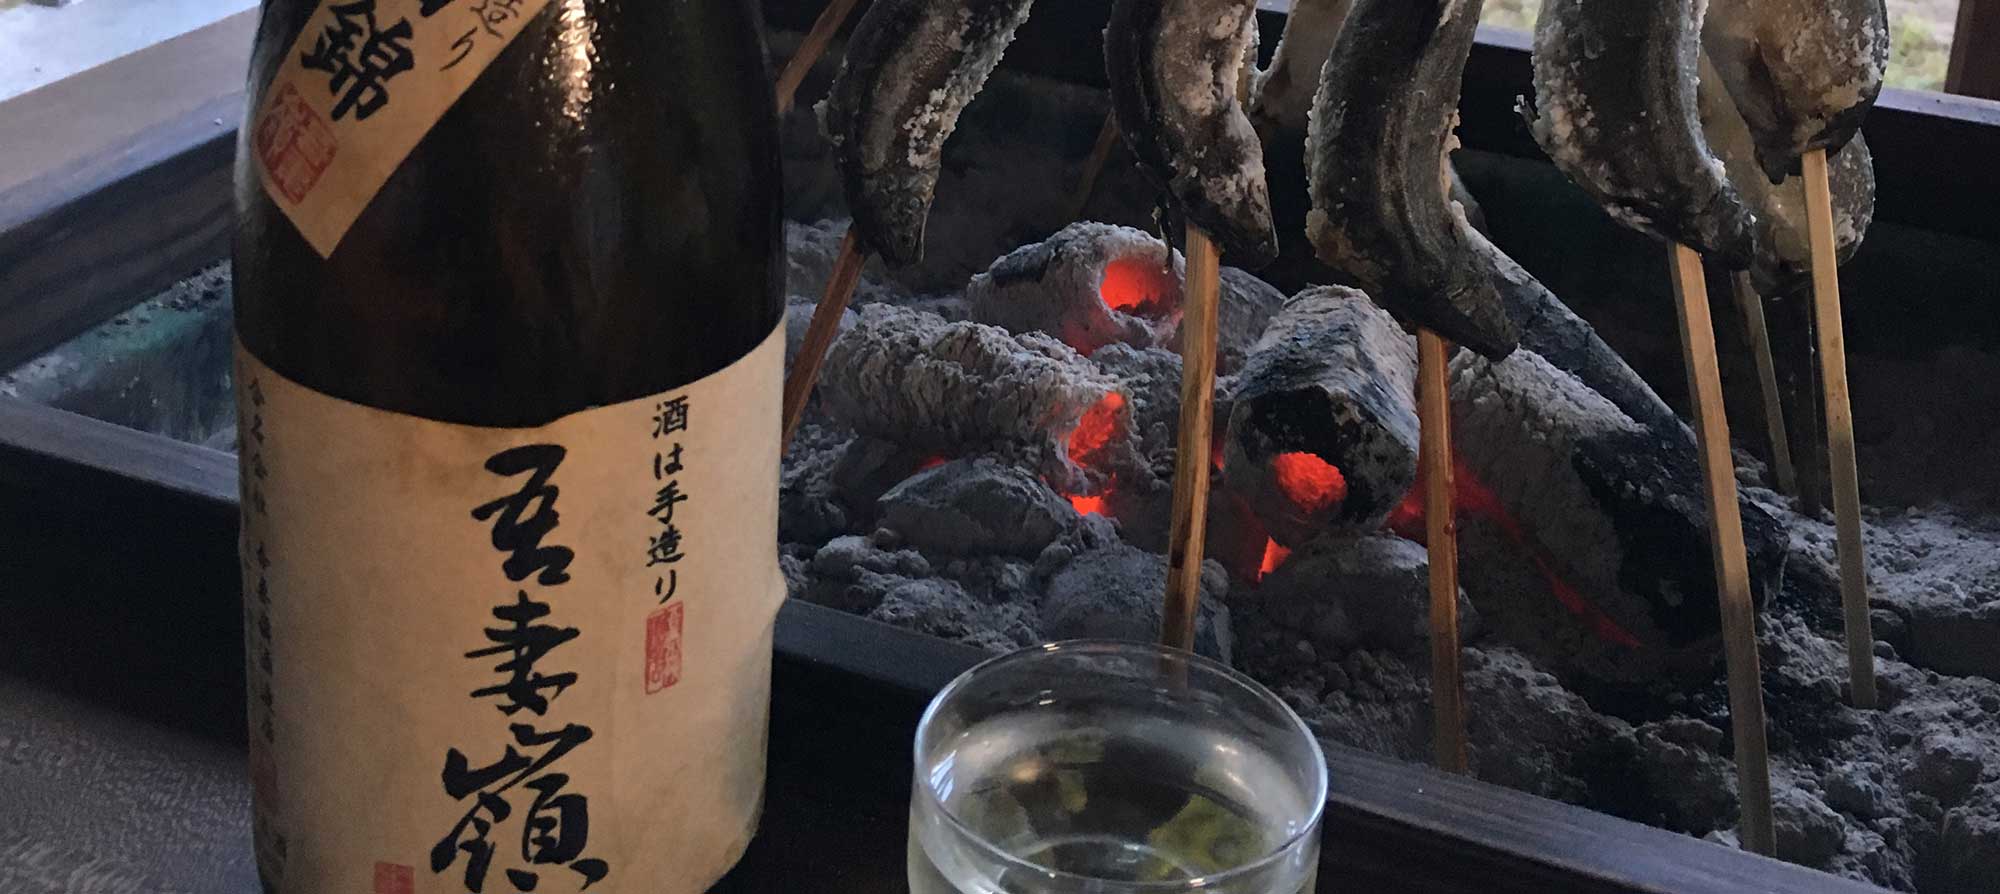 Рыба жарится на палочках в традиционном японском очаге. В стопку налито сакэ